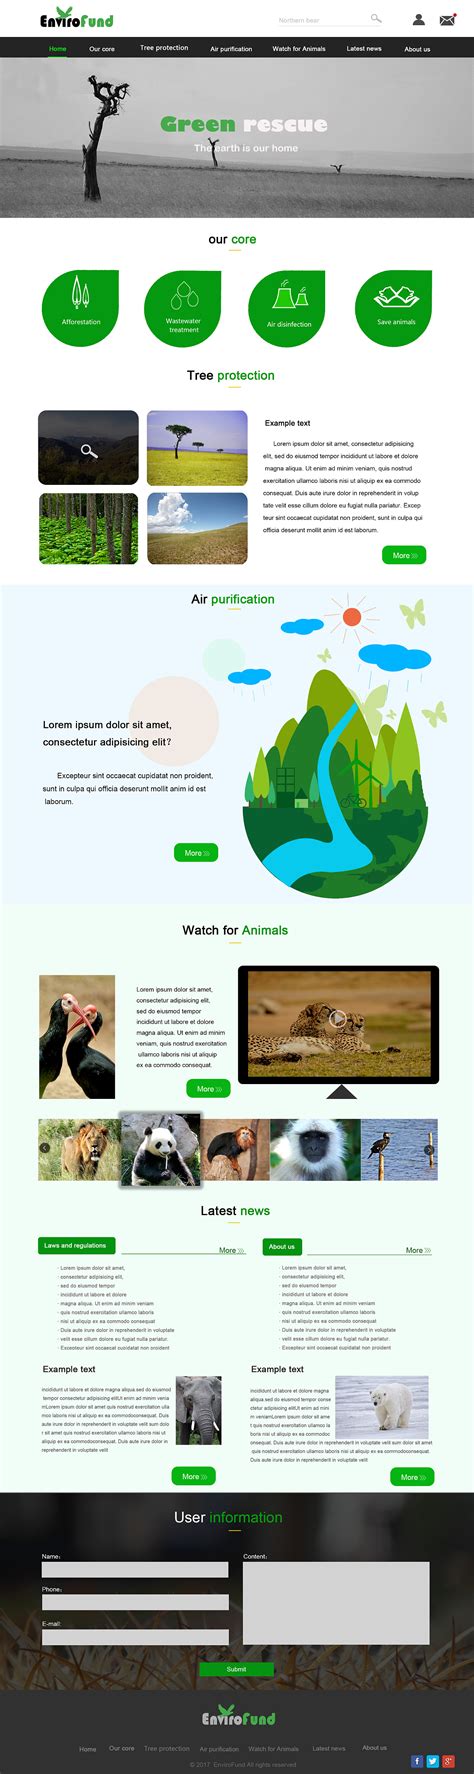 创意生态园林设计免费网站模板_绿色的生态园林景观设计网站模板-凡科建站